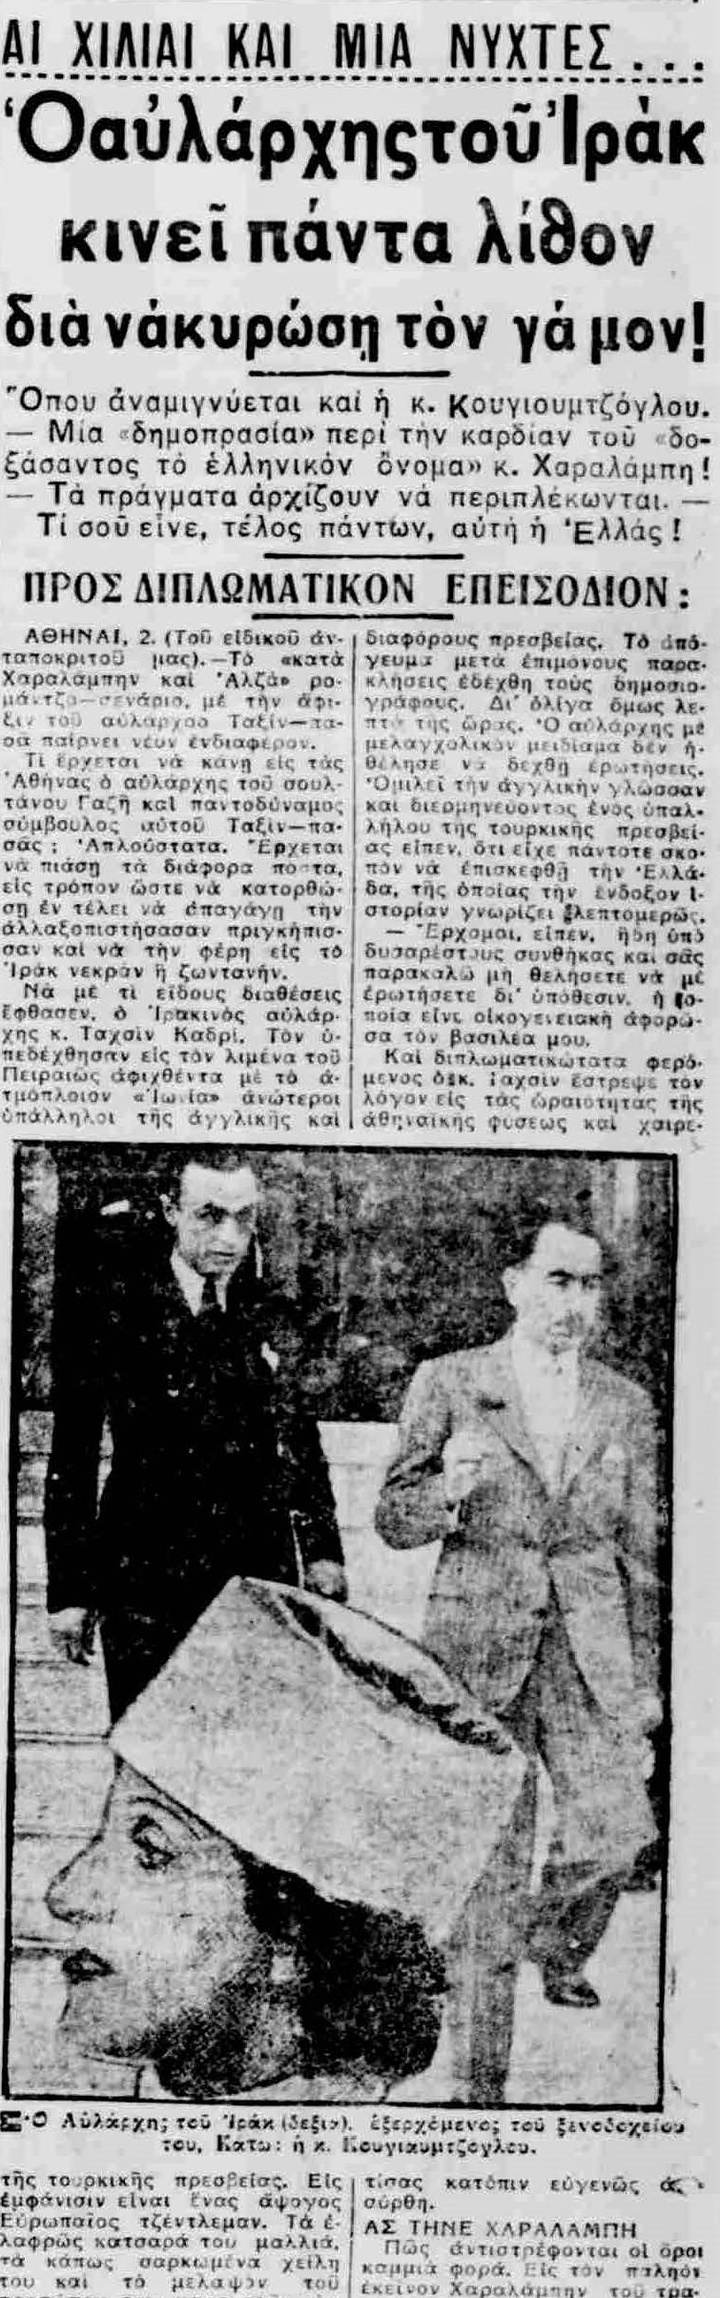 Εφημερίδα ΜΑΚΕΔΟΝΙΑ,  Τετάρτη 3 Ιουνίου 1936